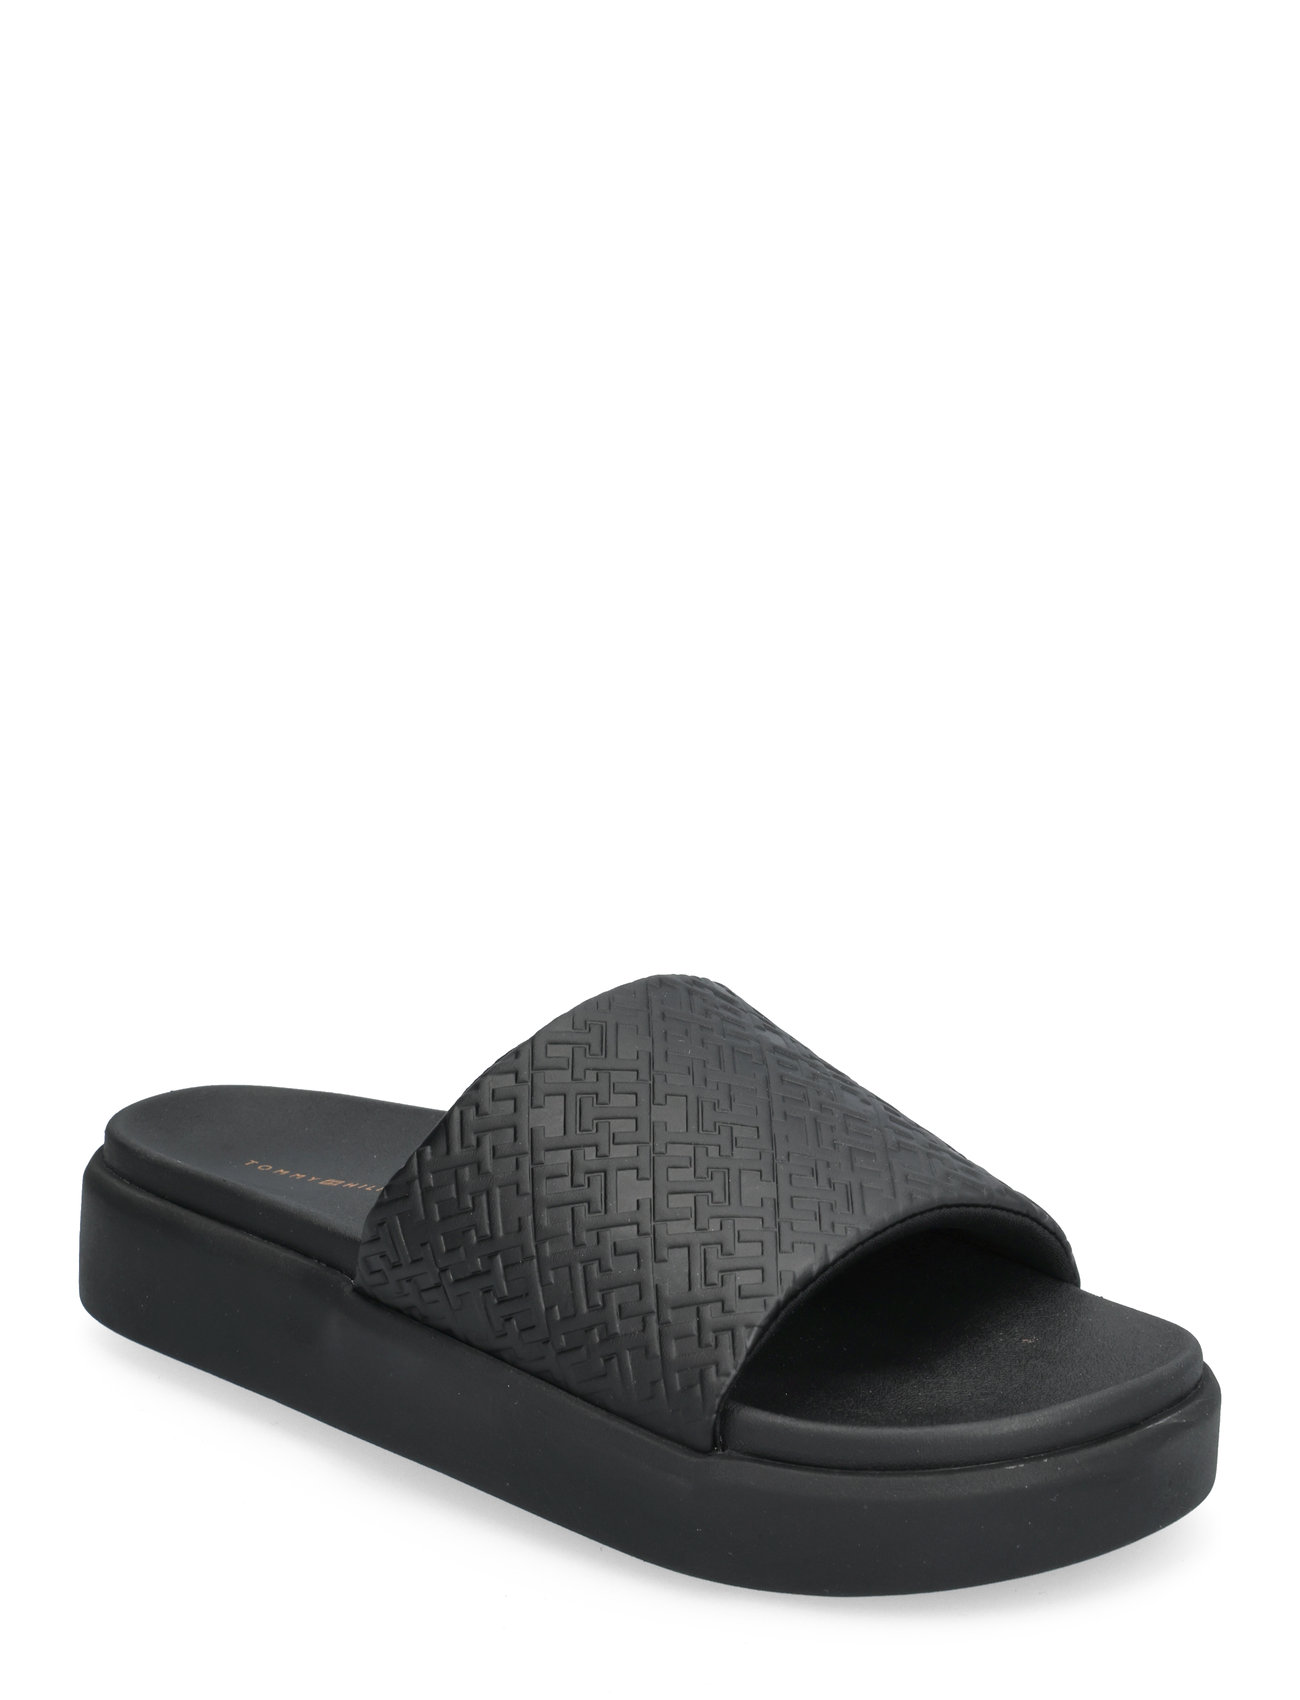 Th Platform Pool Slide Shoes Summer Shoes Sandals Pool Sliders Black Tommy Hilfiger